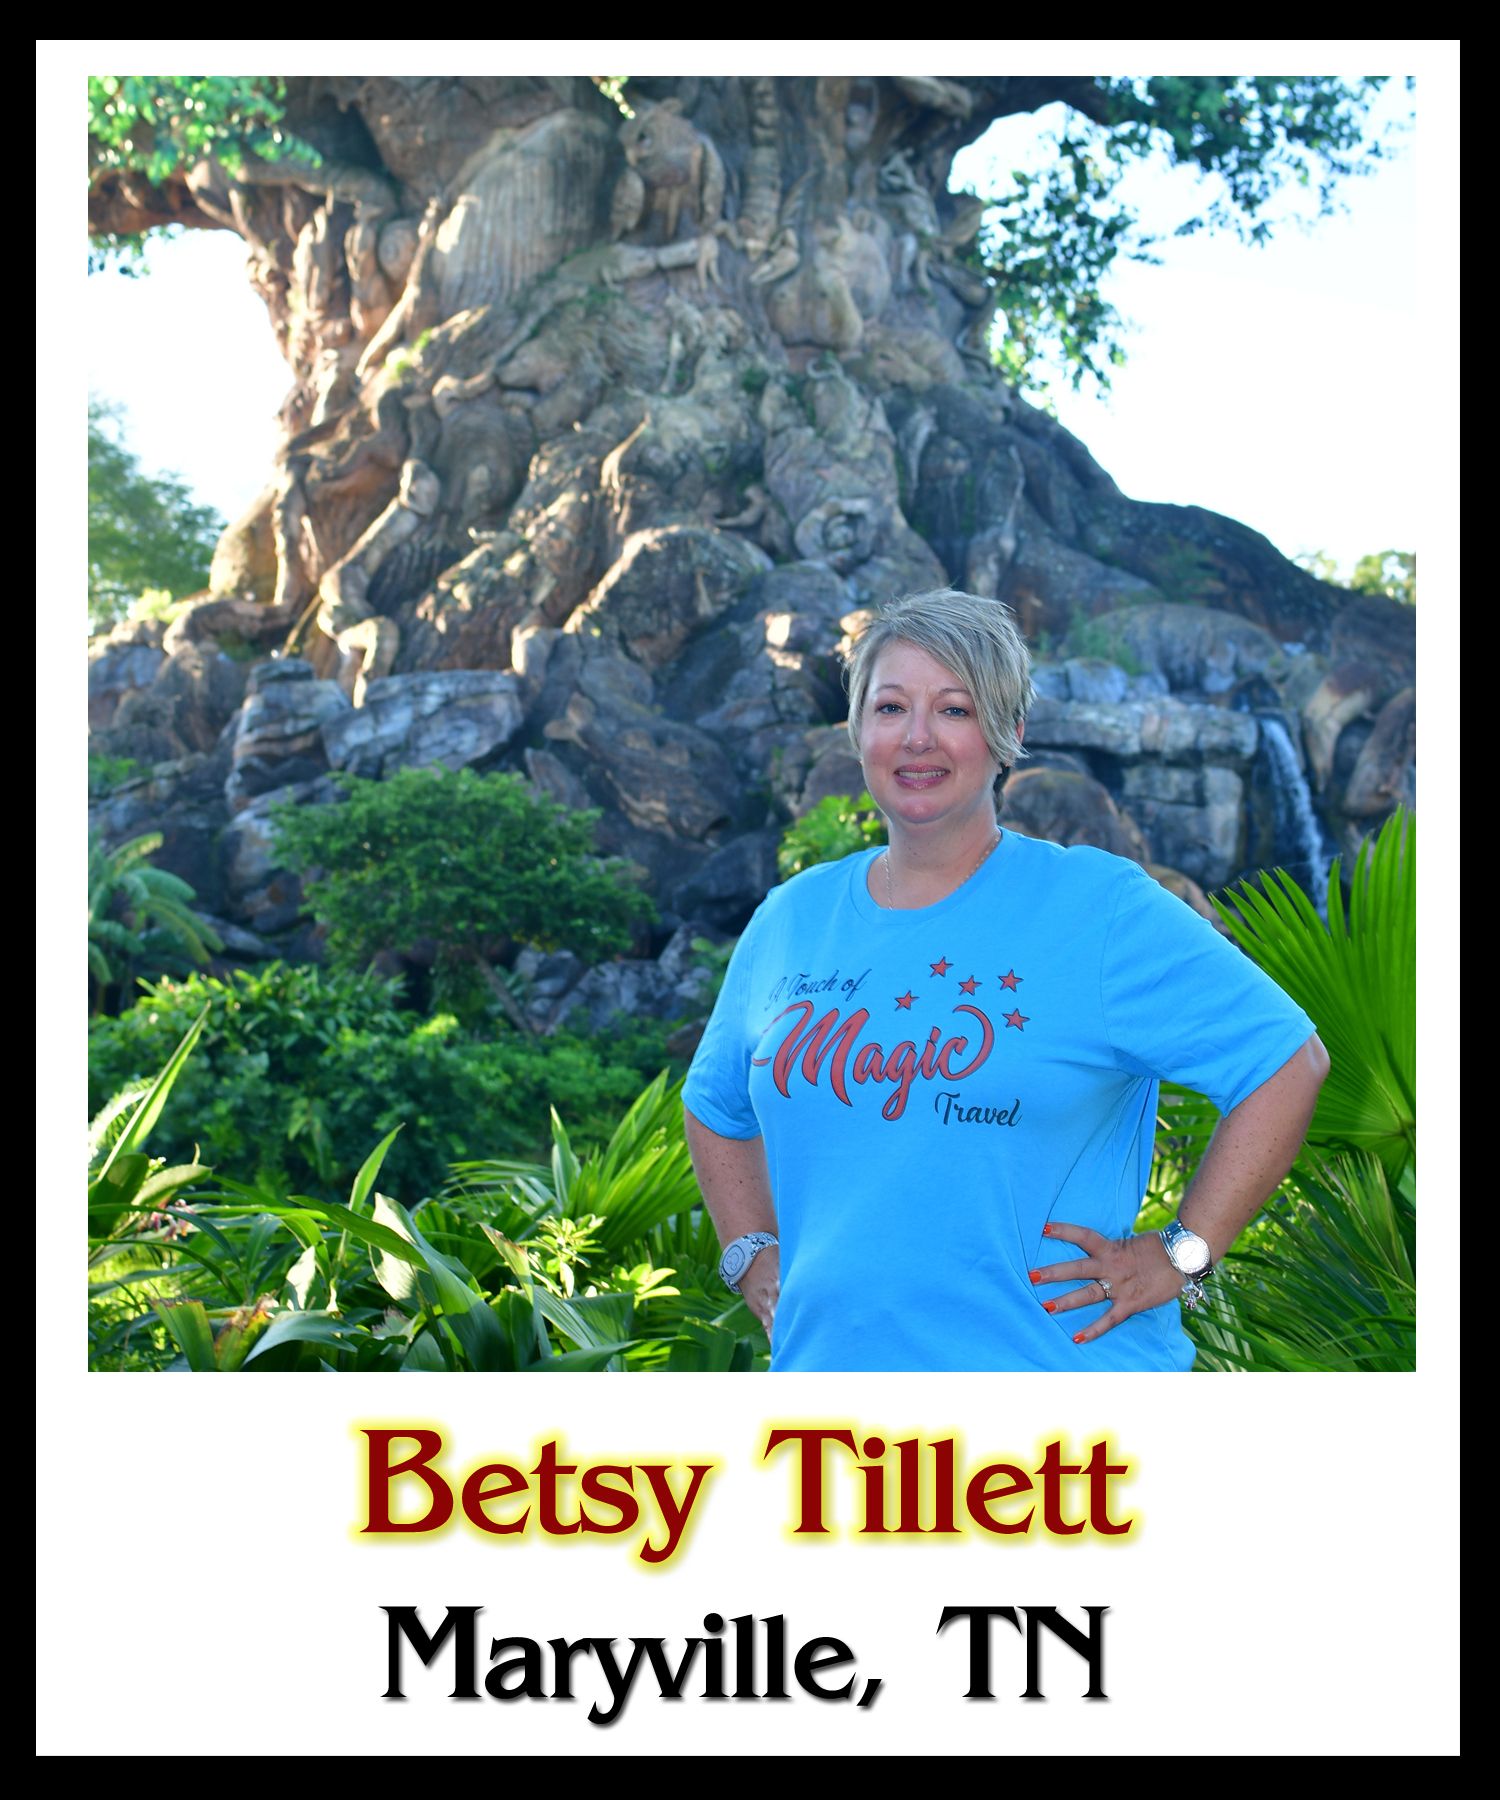 Betsy Tillett